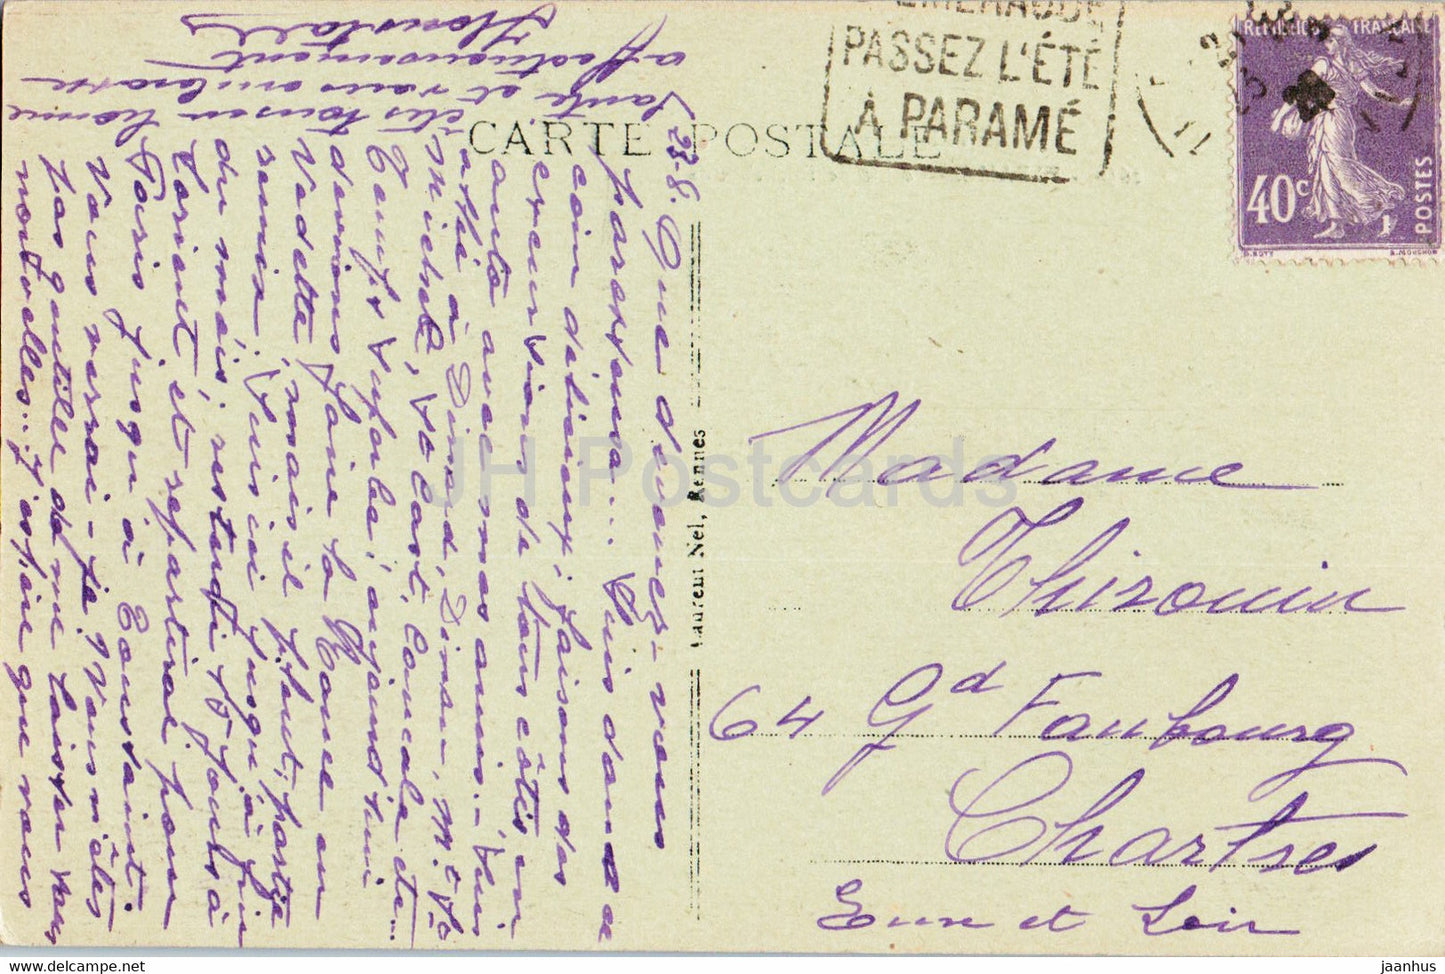 Parame - Pointe de Rochebonne - Cote d'Emeraude - 2630 - old postcard - 1926 - France - used